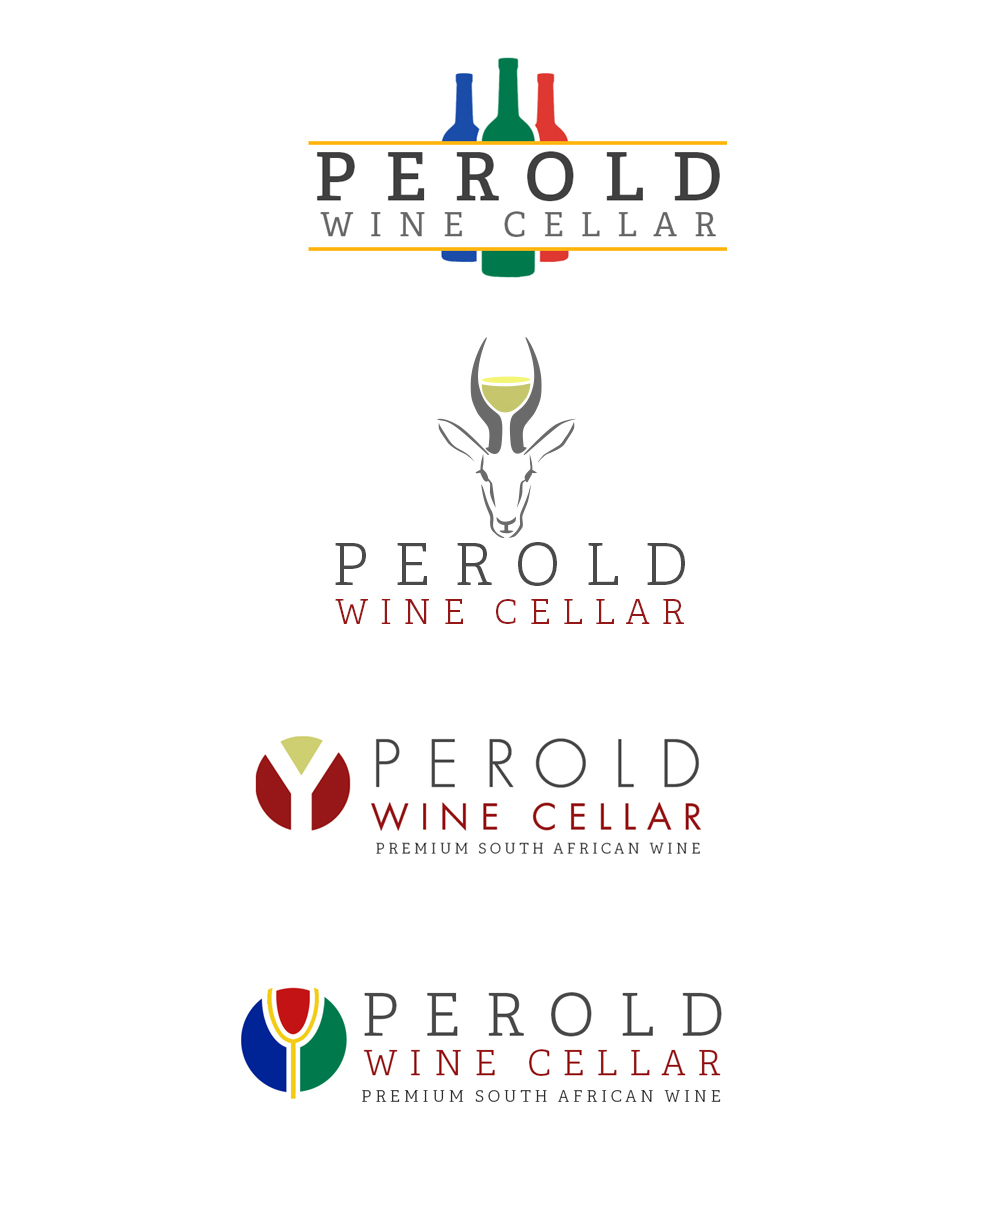 Perold Wine Cellar logo concepts